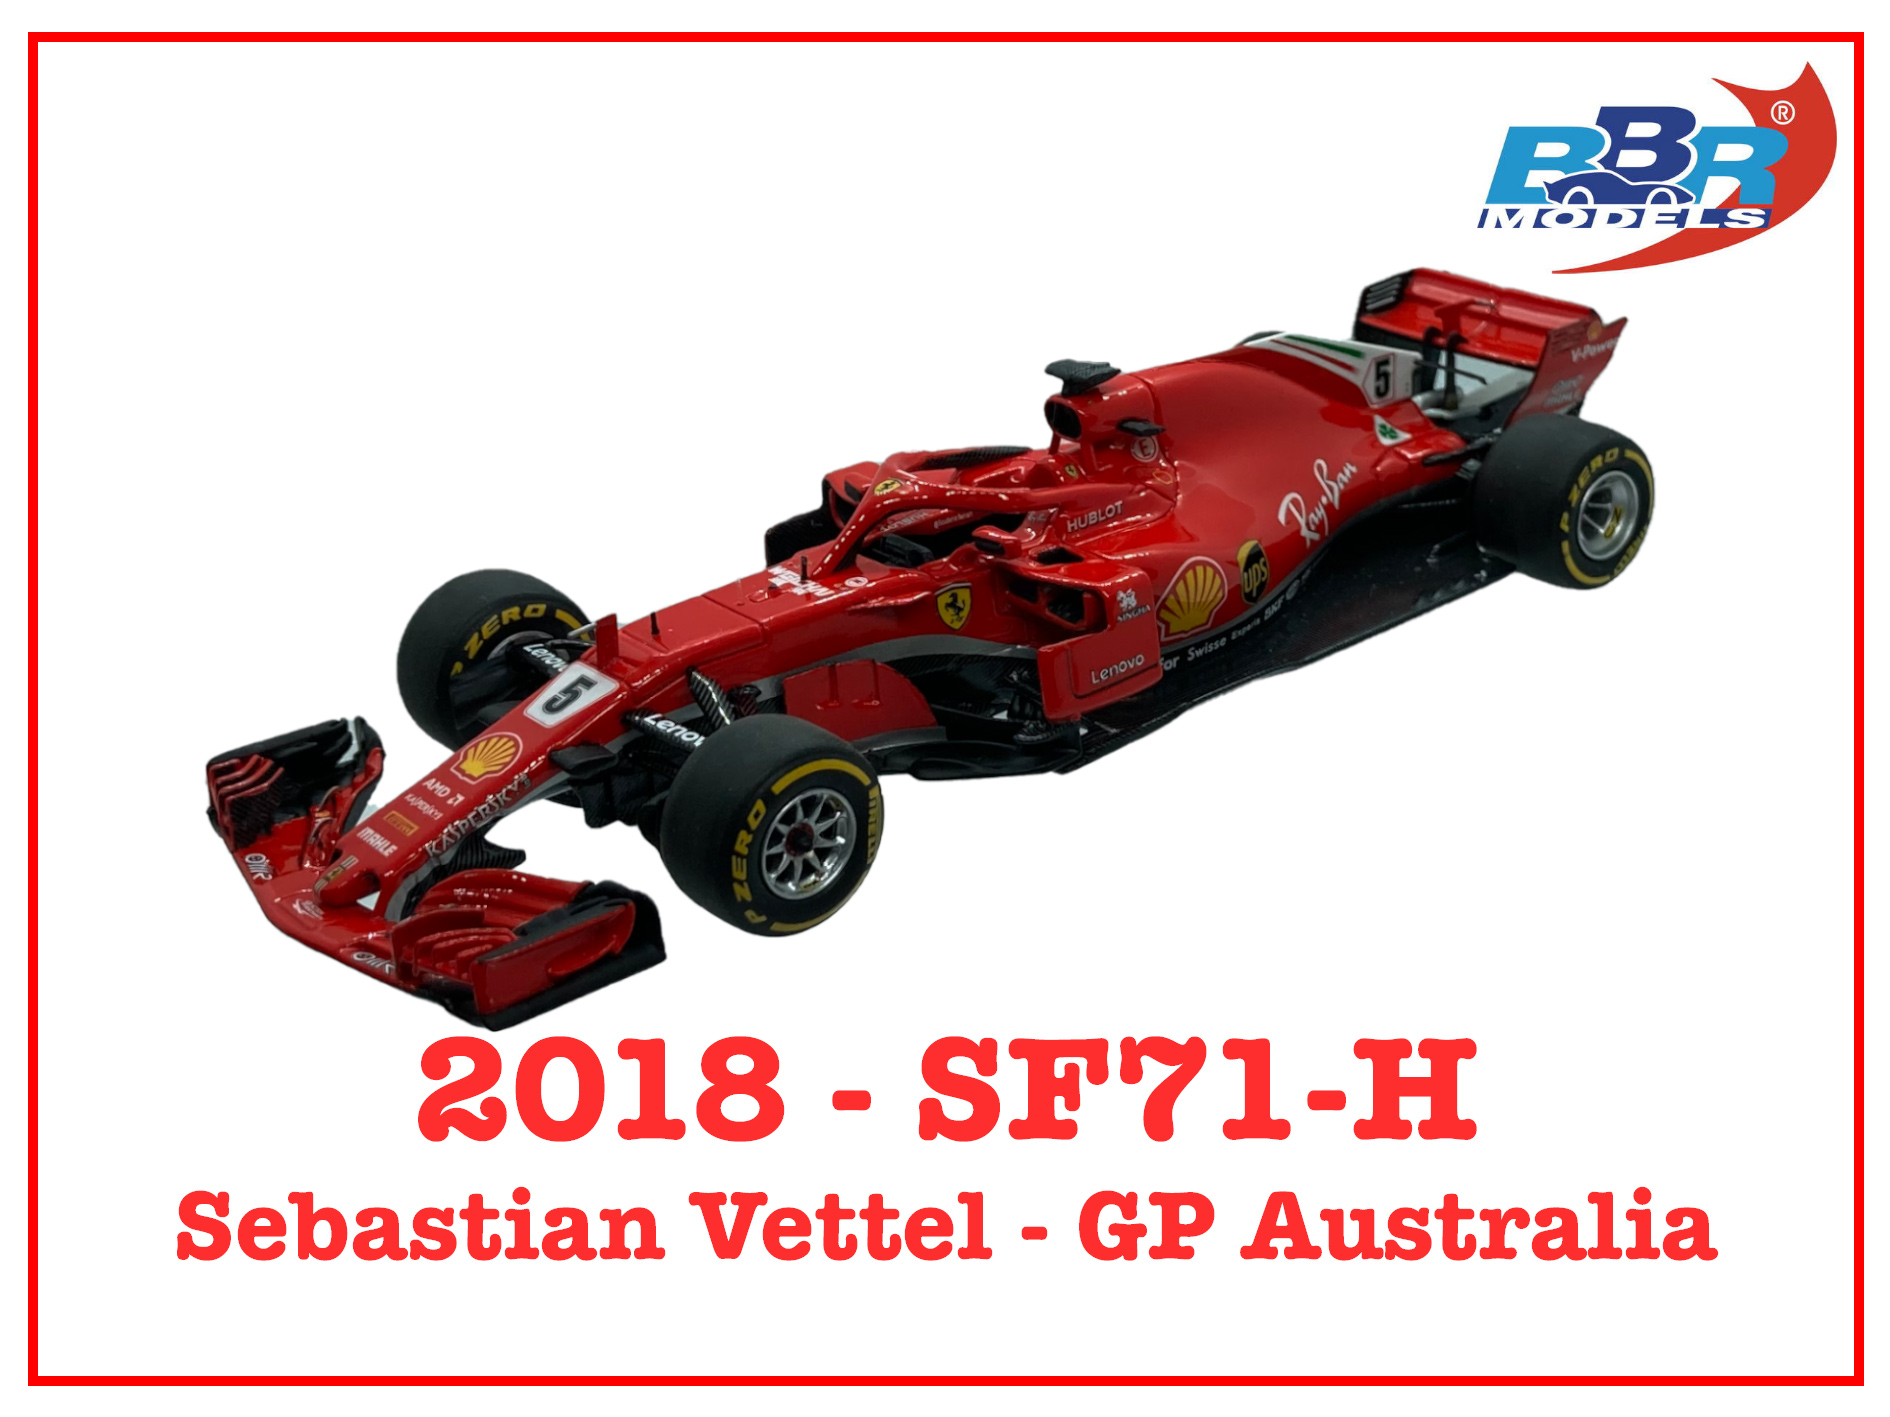 Immagine SF71-H Sebastian Vettel GP Australi